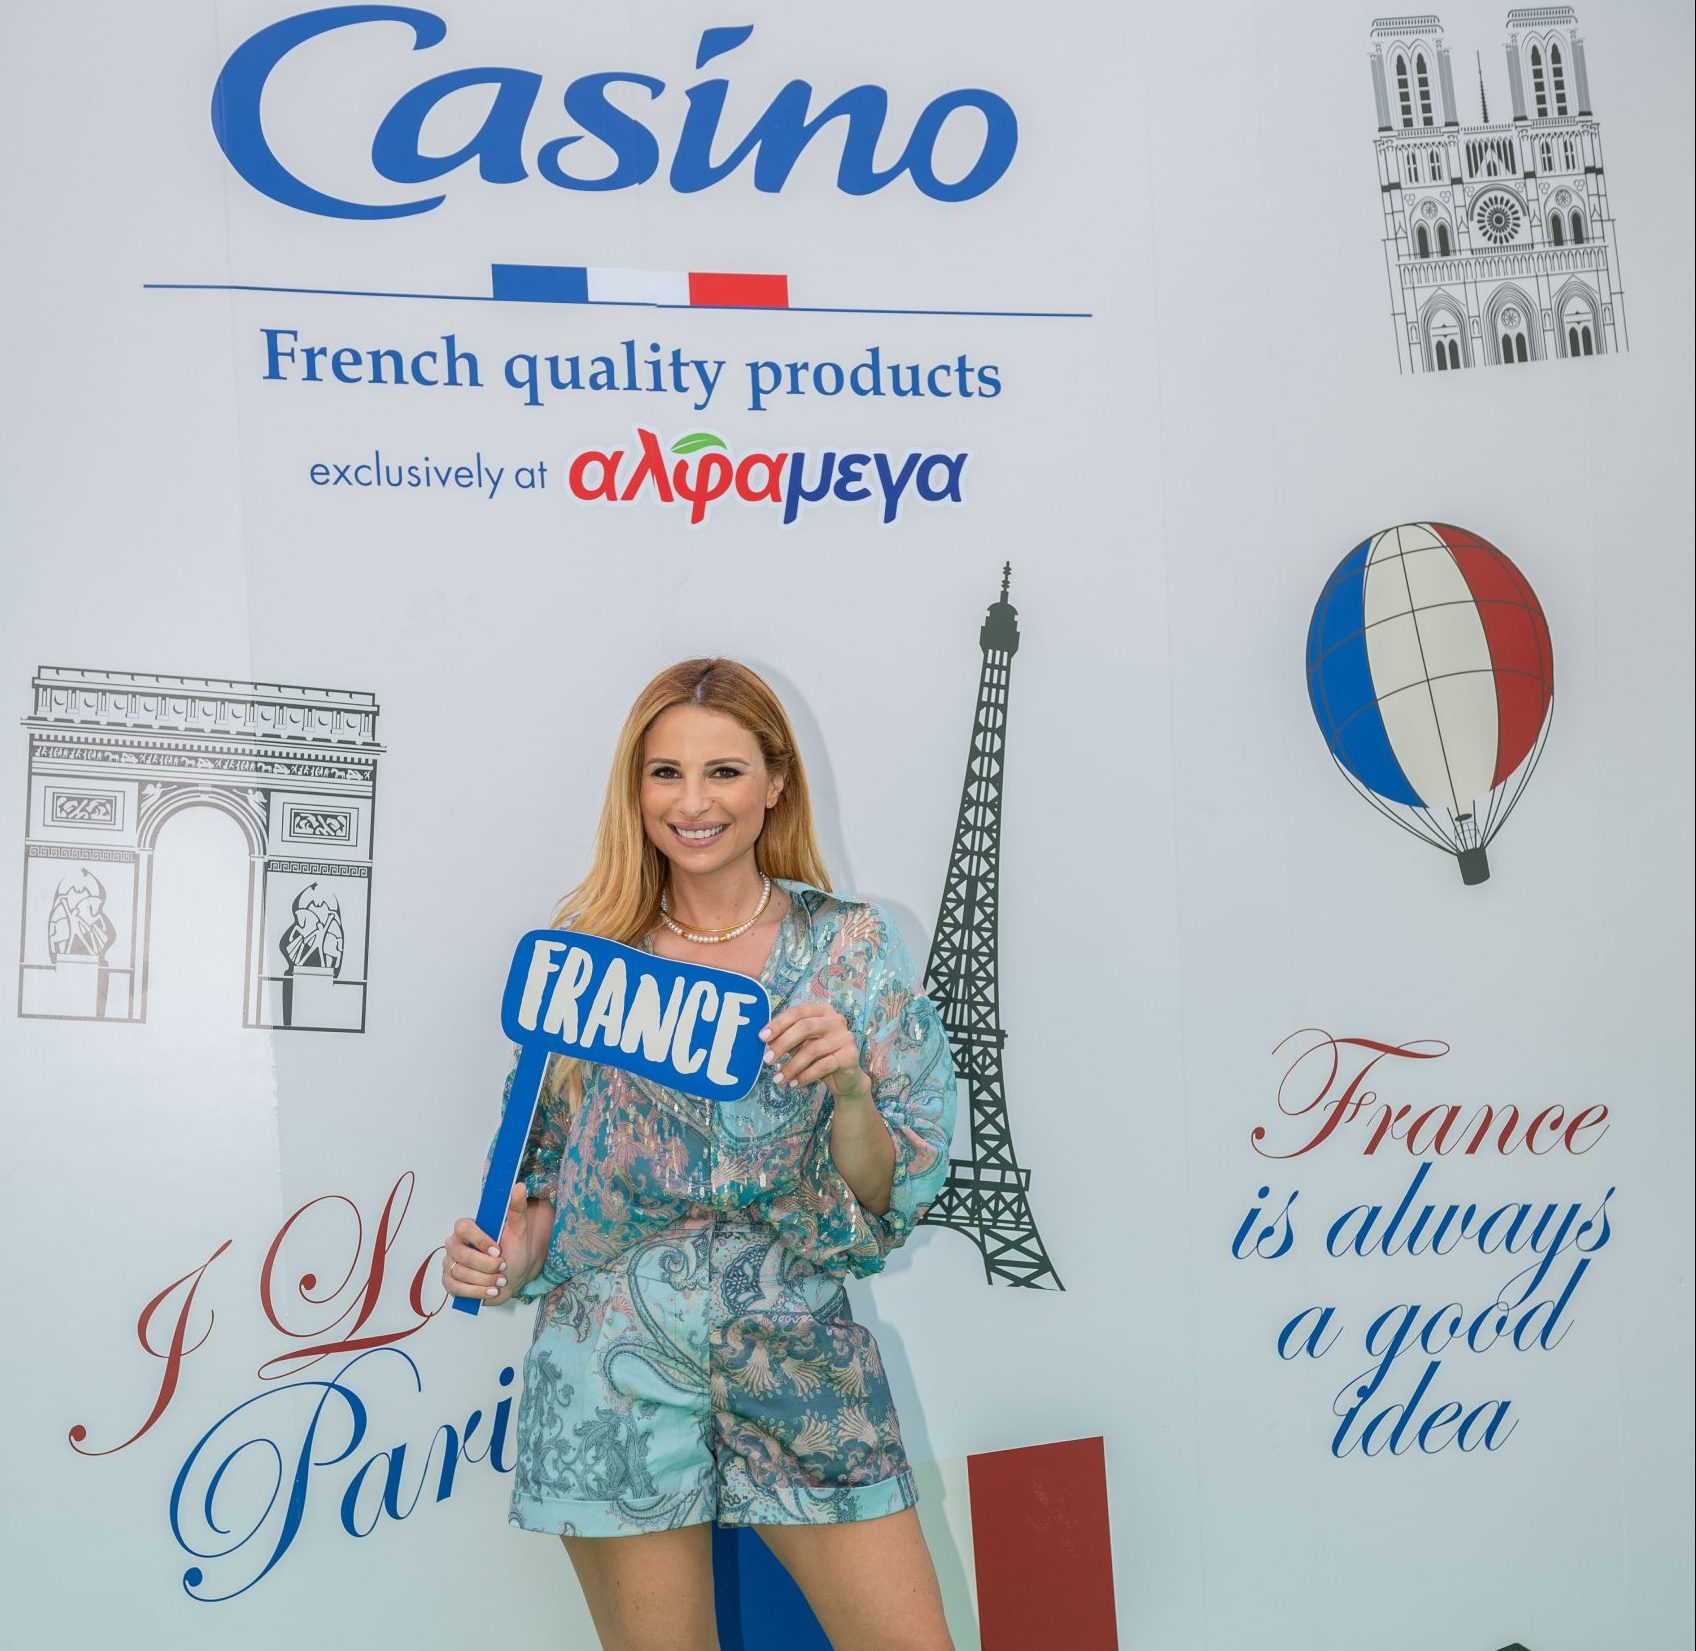 Σε εκδήλωση με άρωμα Γαλλίας οι Υπεραγορές ΑΛΦΑΜΕΓΑ γιόρτασαν τη νέα τους συνεργασία με τον γαλλικό κολοσσό Casino